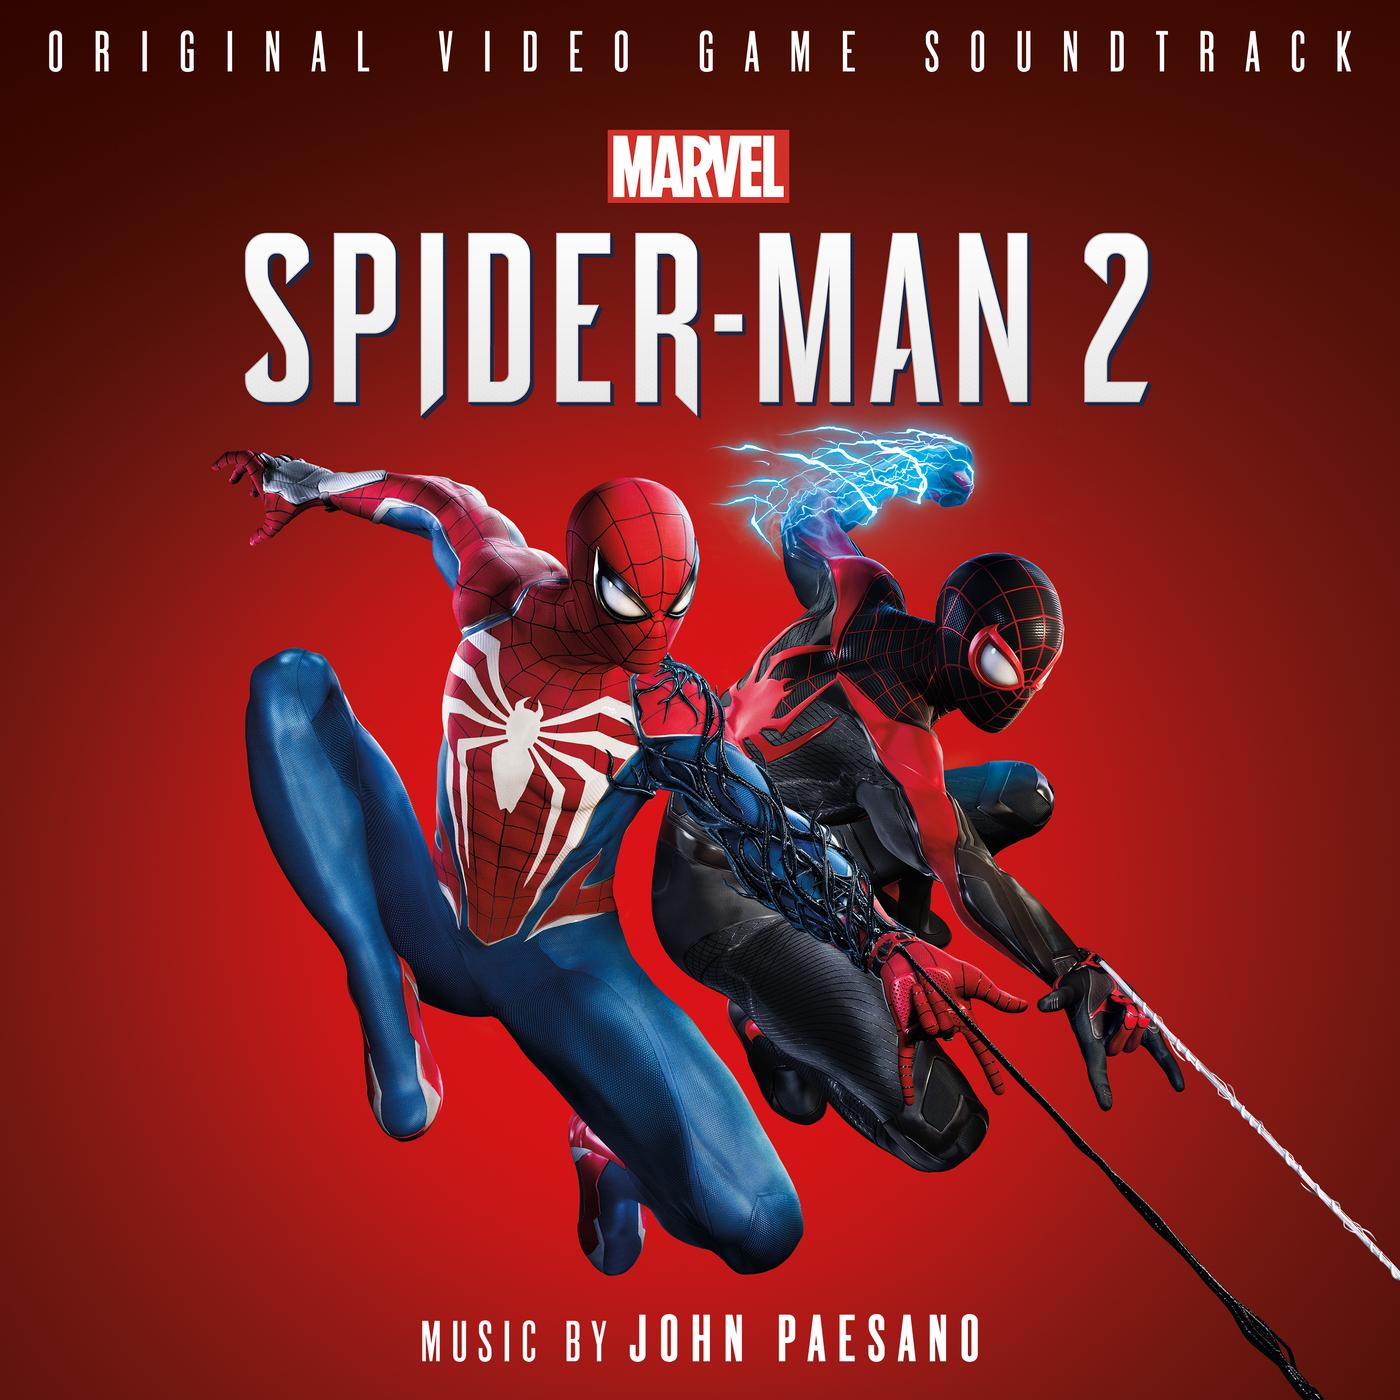 Marvel's Spider-Man 2: Original Video Game Soundtrack